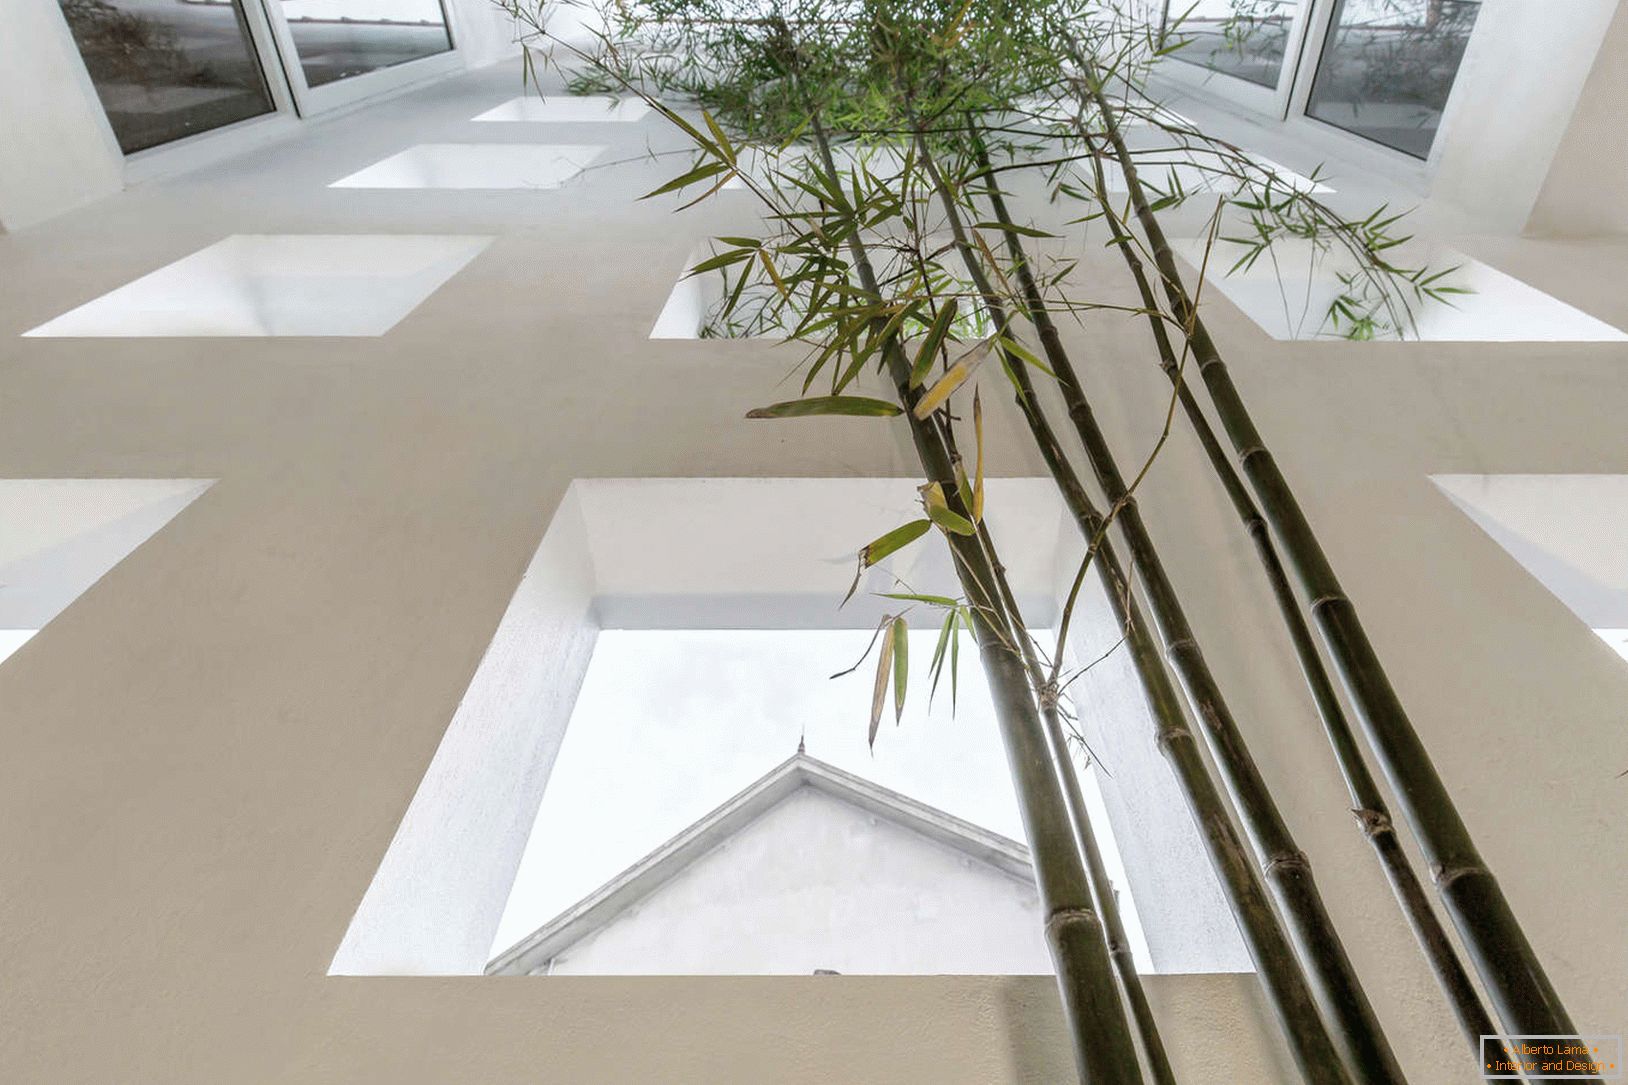 Bambù in una stretta casa di cemento